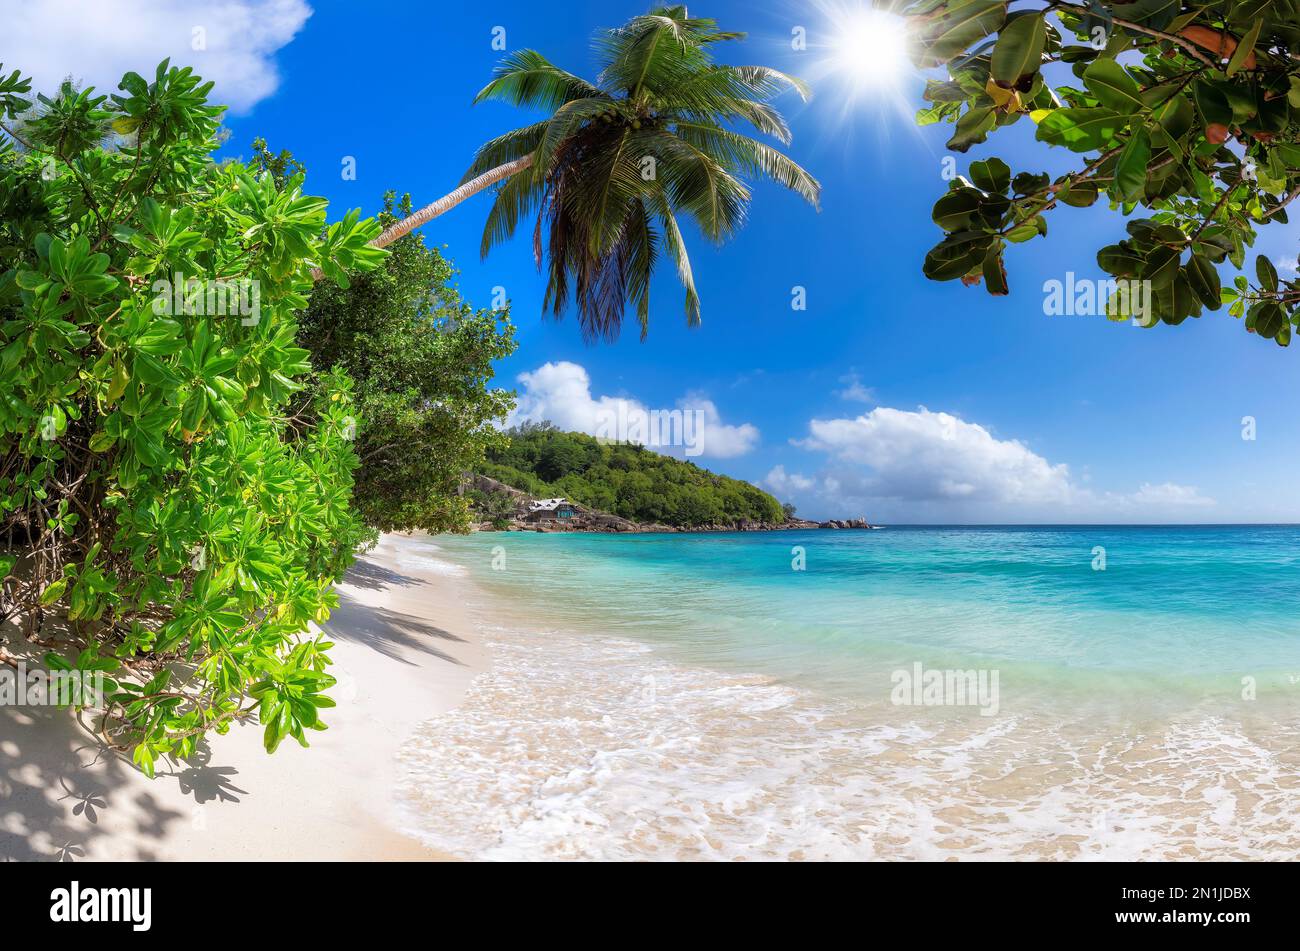 Plage tropicale ensoleillée et cocotiers sur sable blanc dans l'île des Seychelles. Banque D'Images